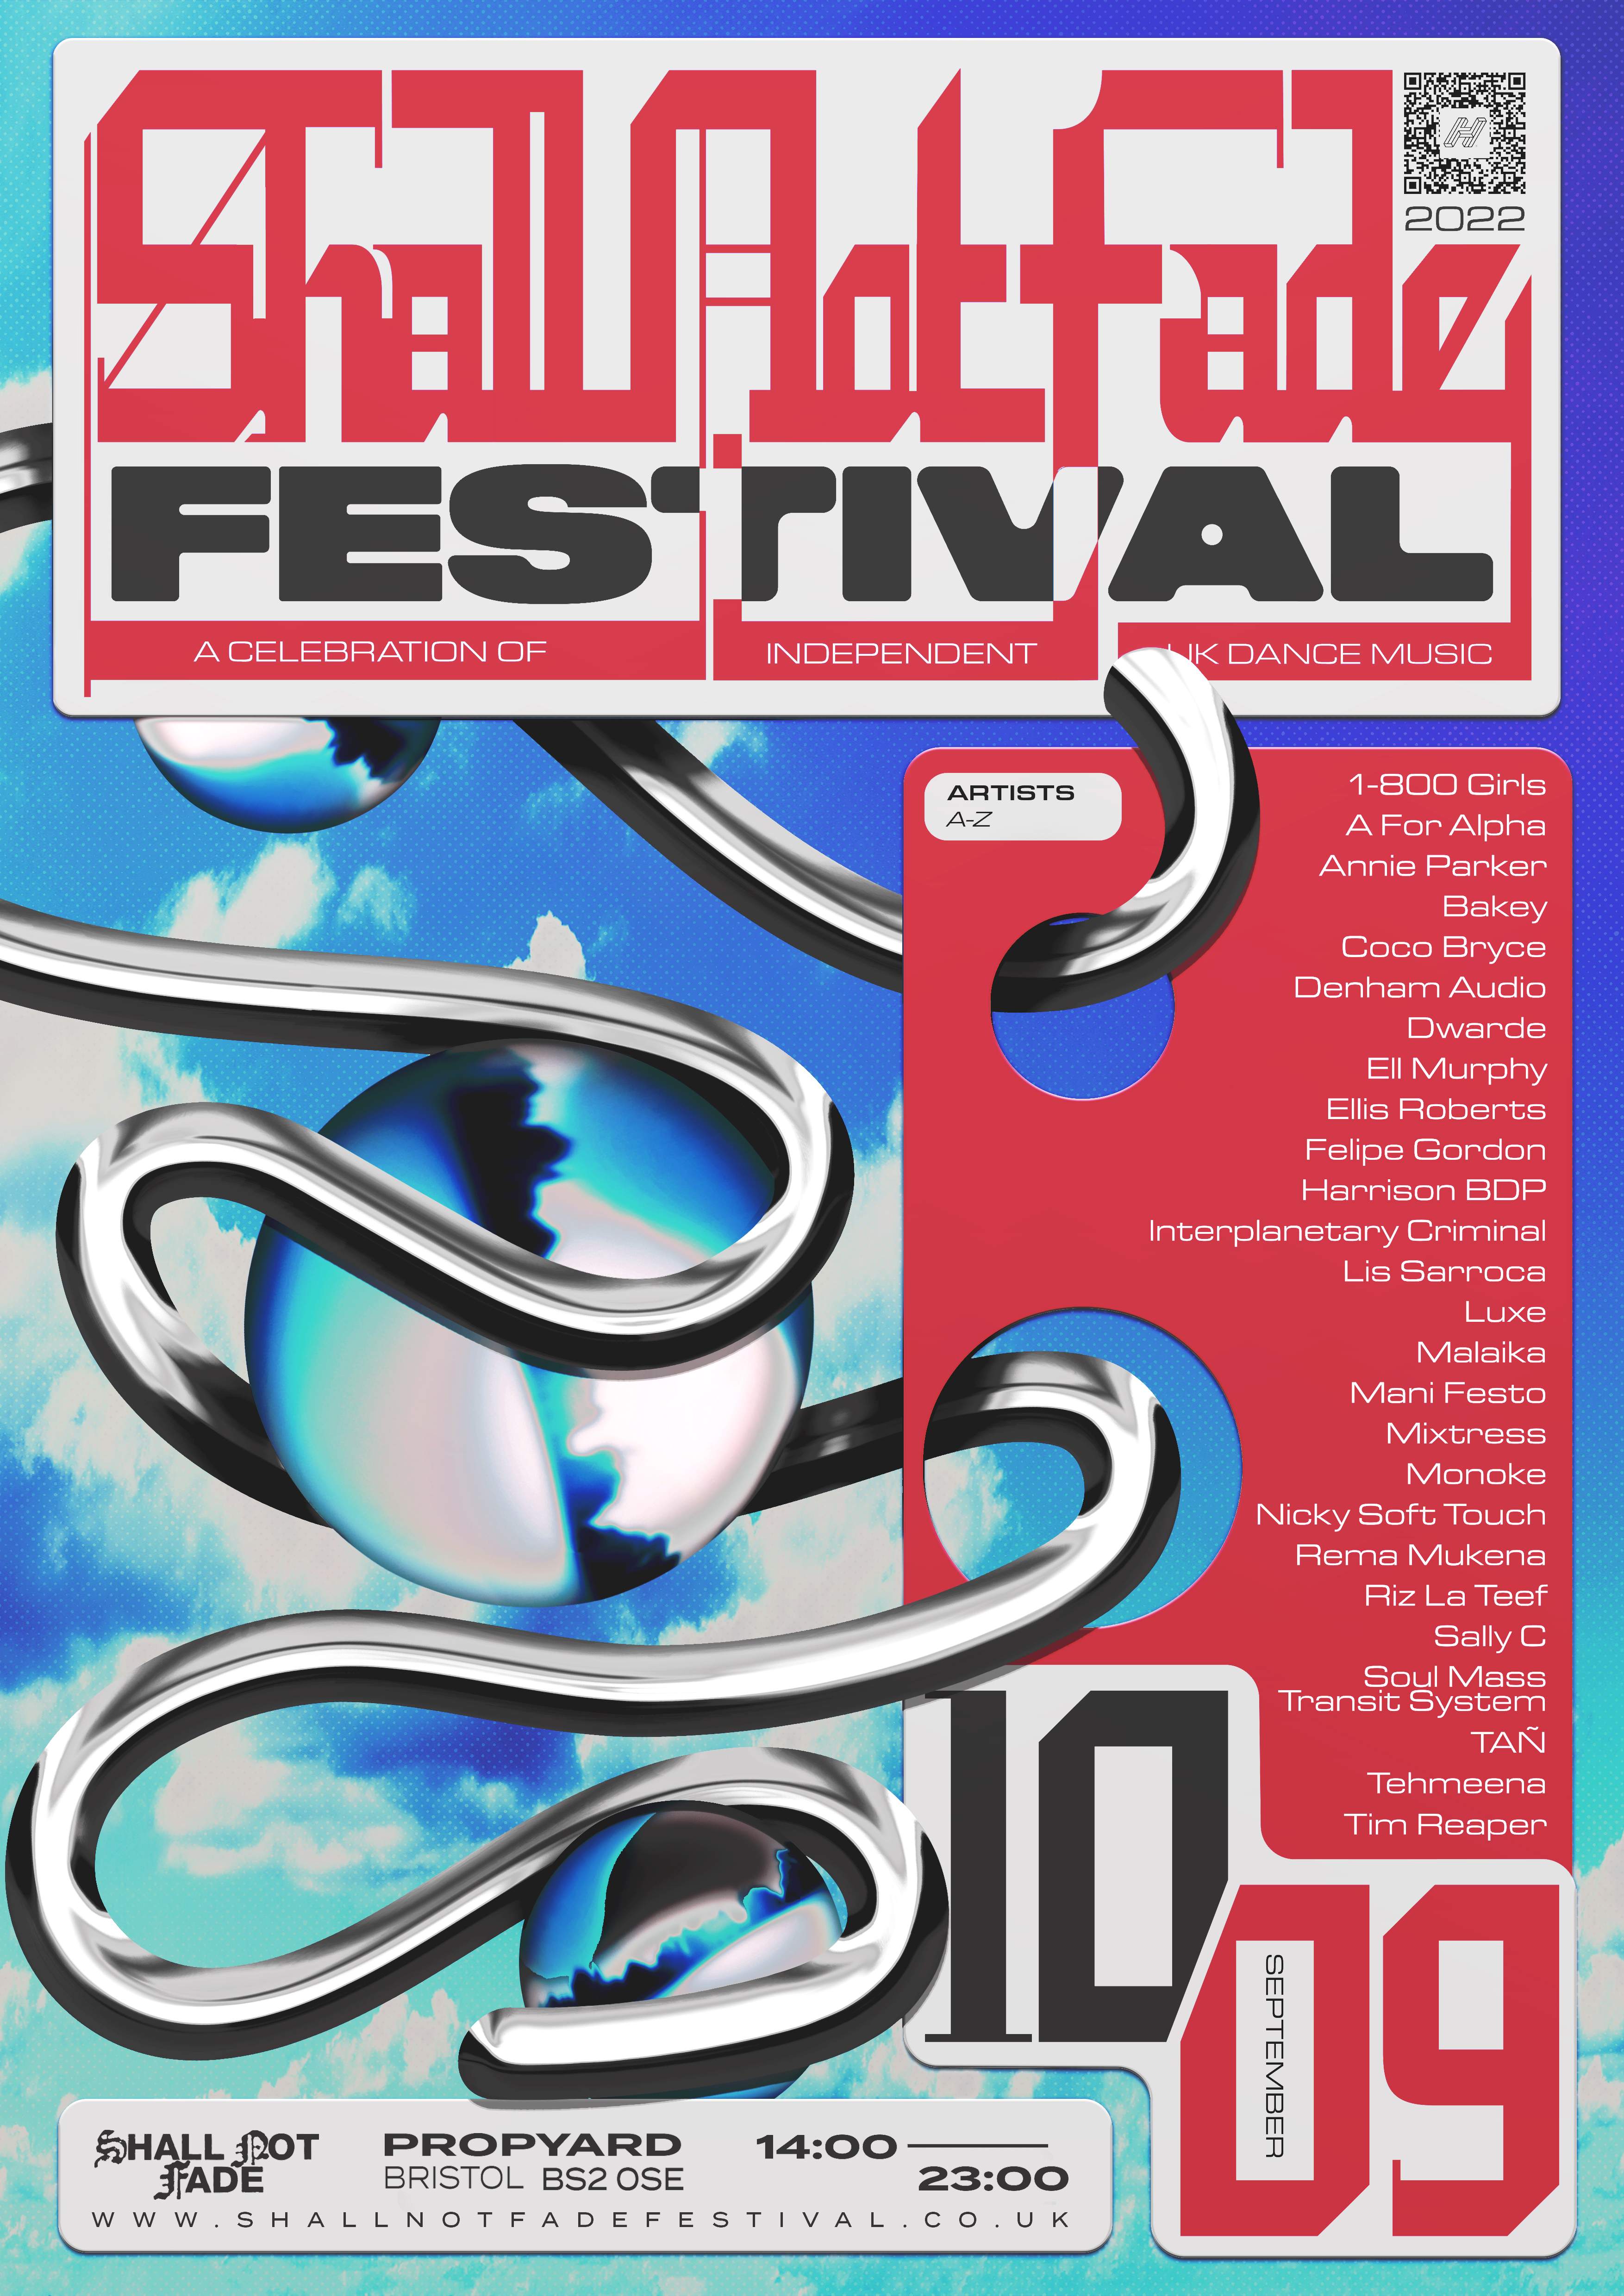 Shall Not Fade Festival 2022 - Página trasera